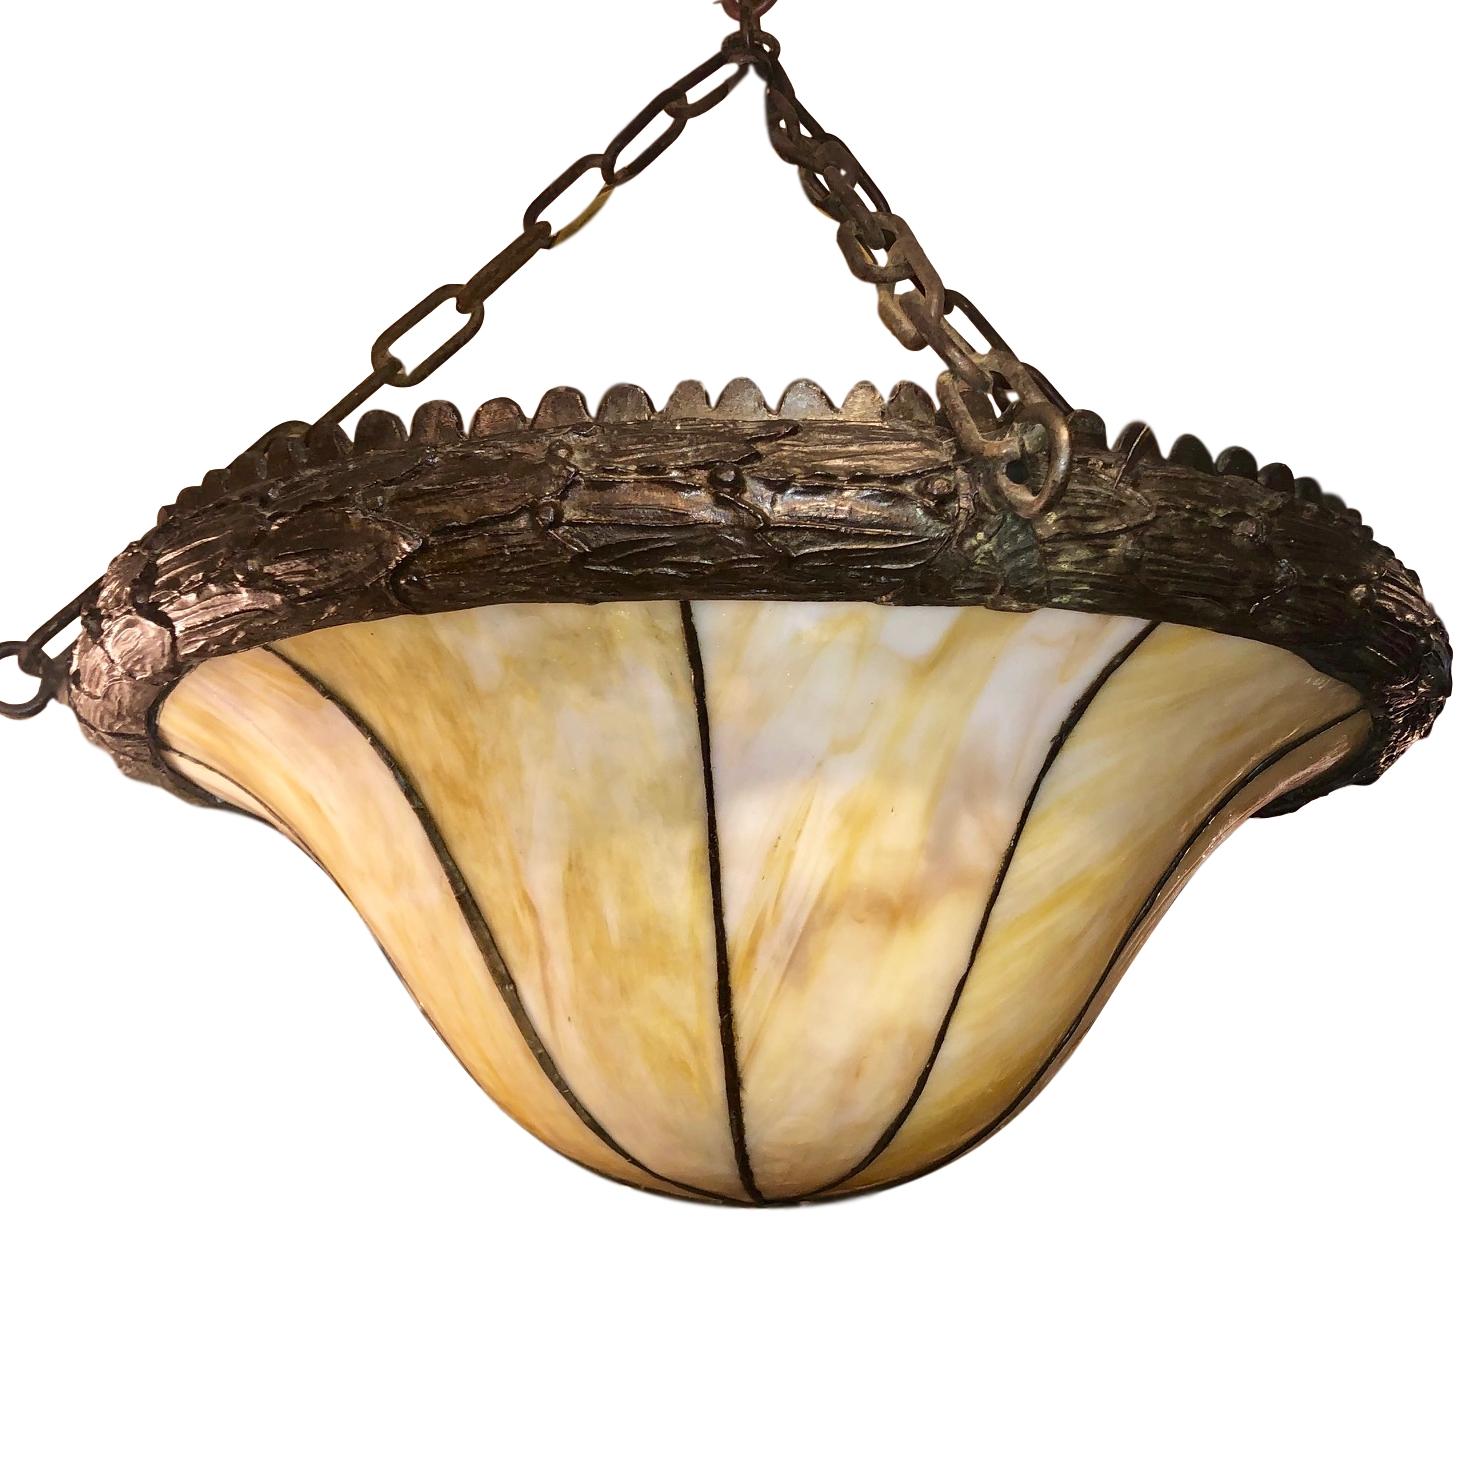 Un luminaire suspendu anglais en verre plombé datant d'environ 1910 avec des tons ambrés dans le verre.

Mesures :
Chute minimale de 24